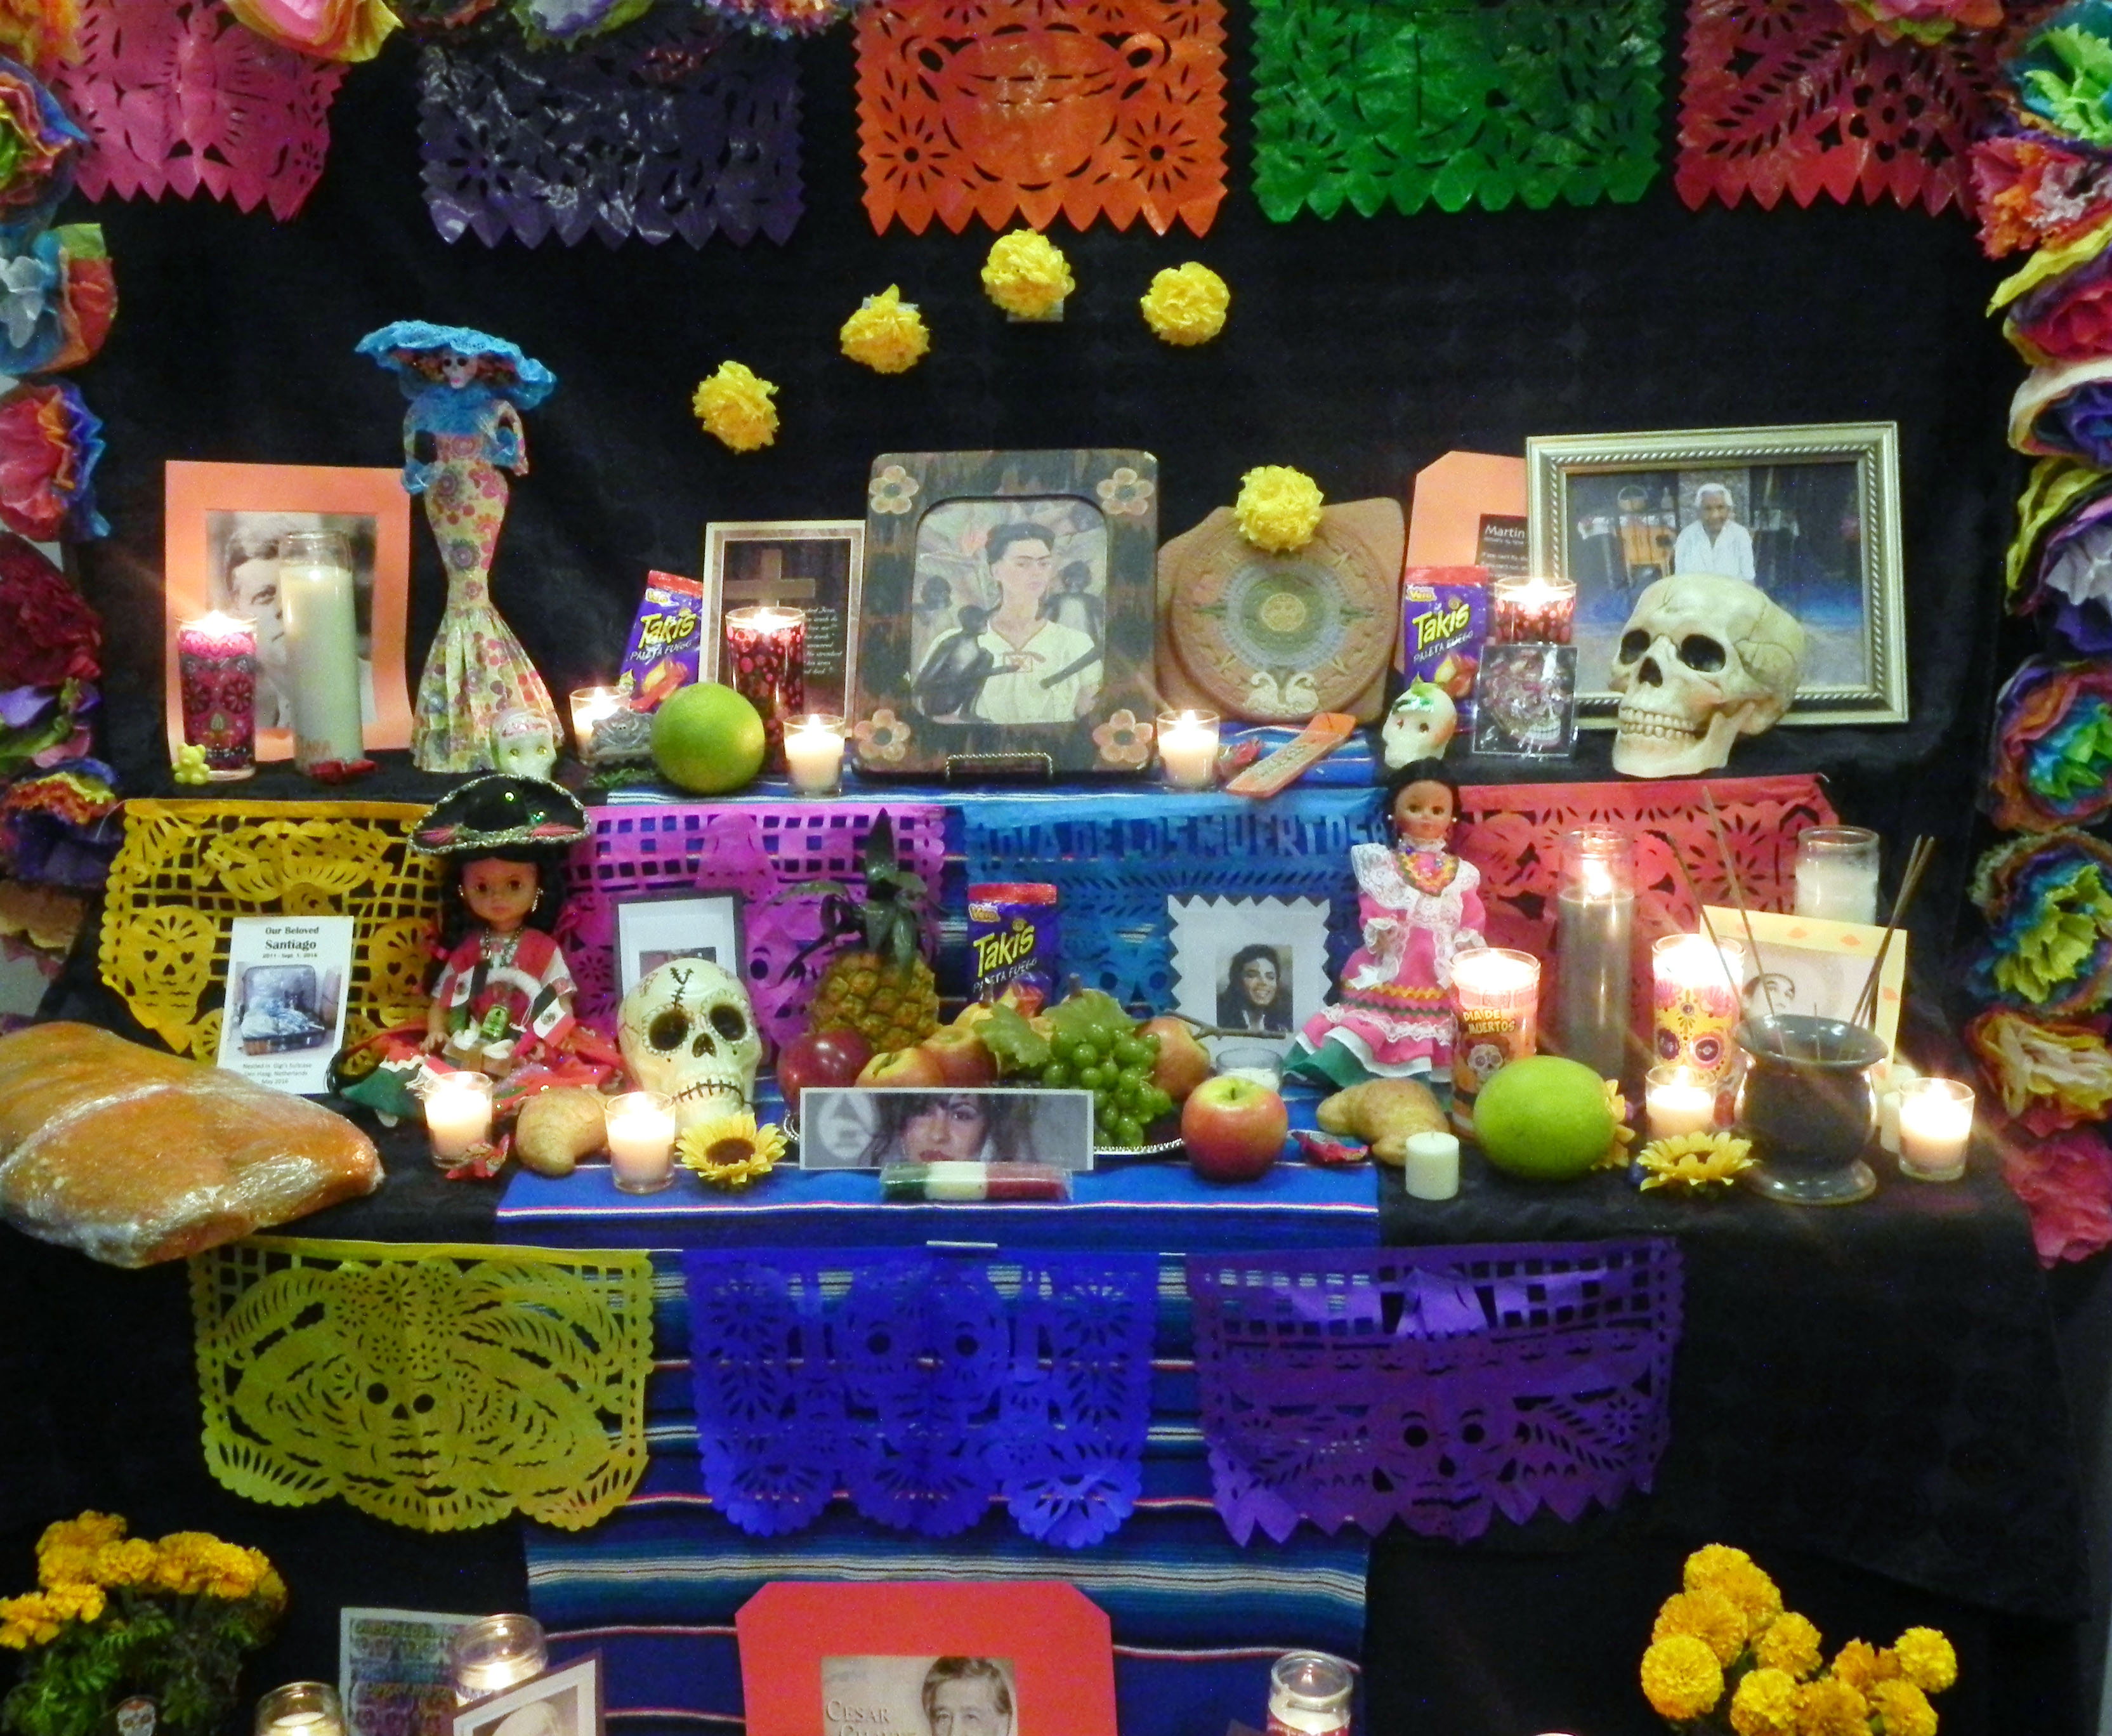 Honoring the dead at Día de los Muertos